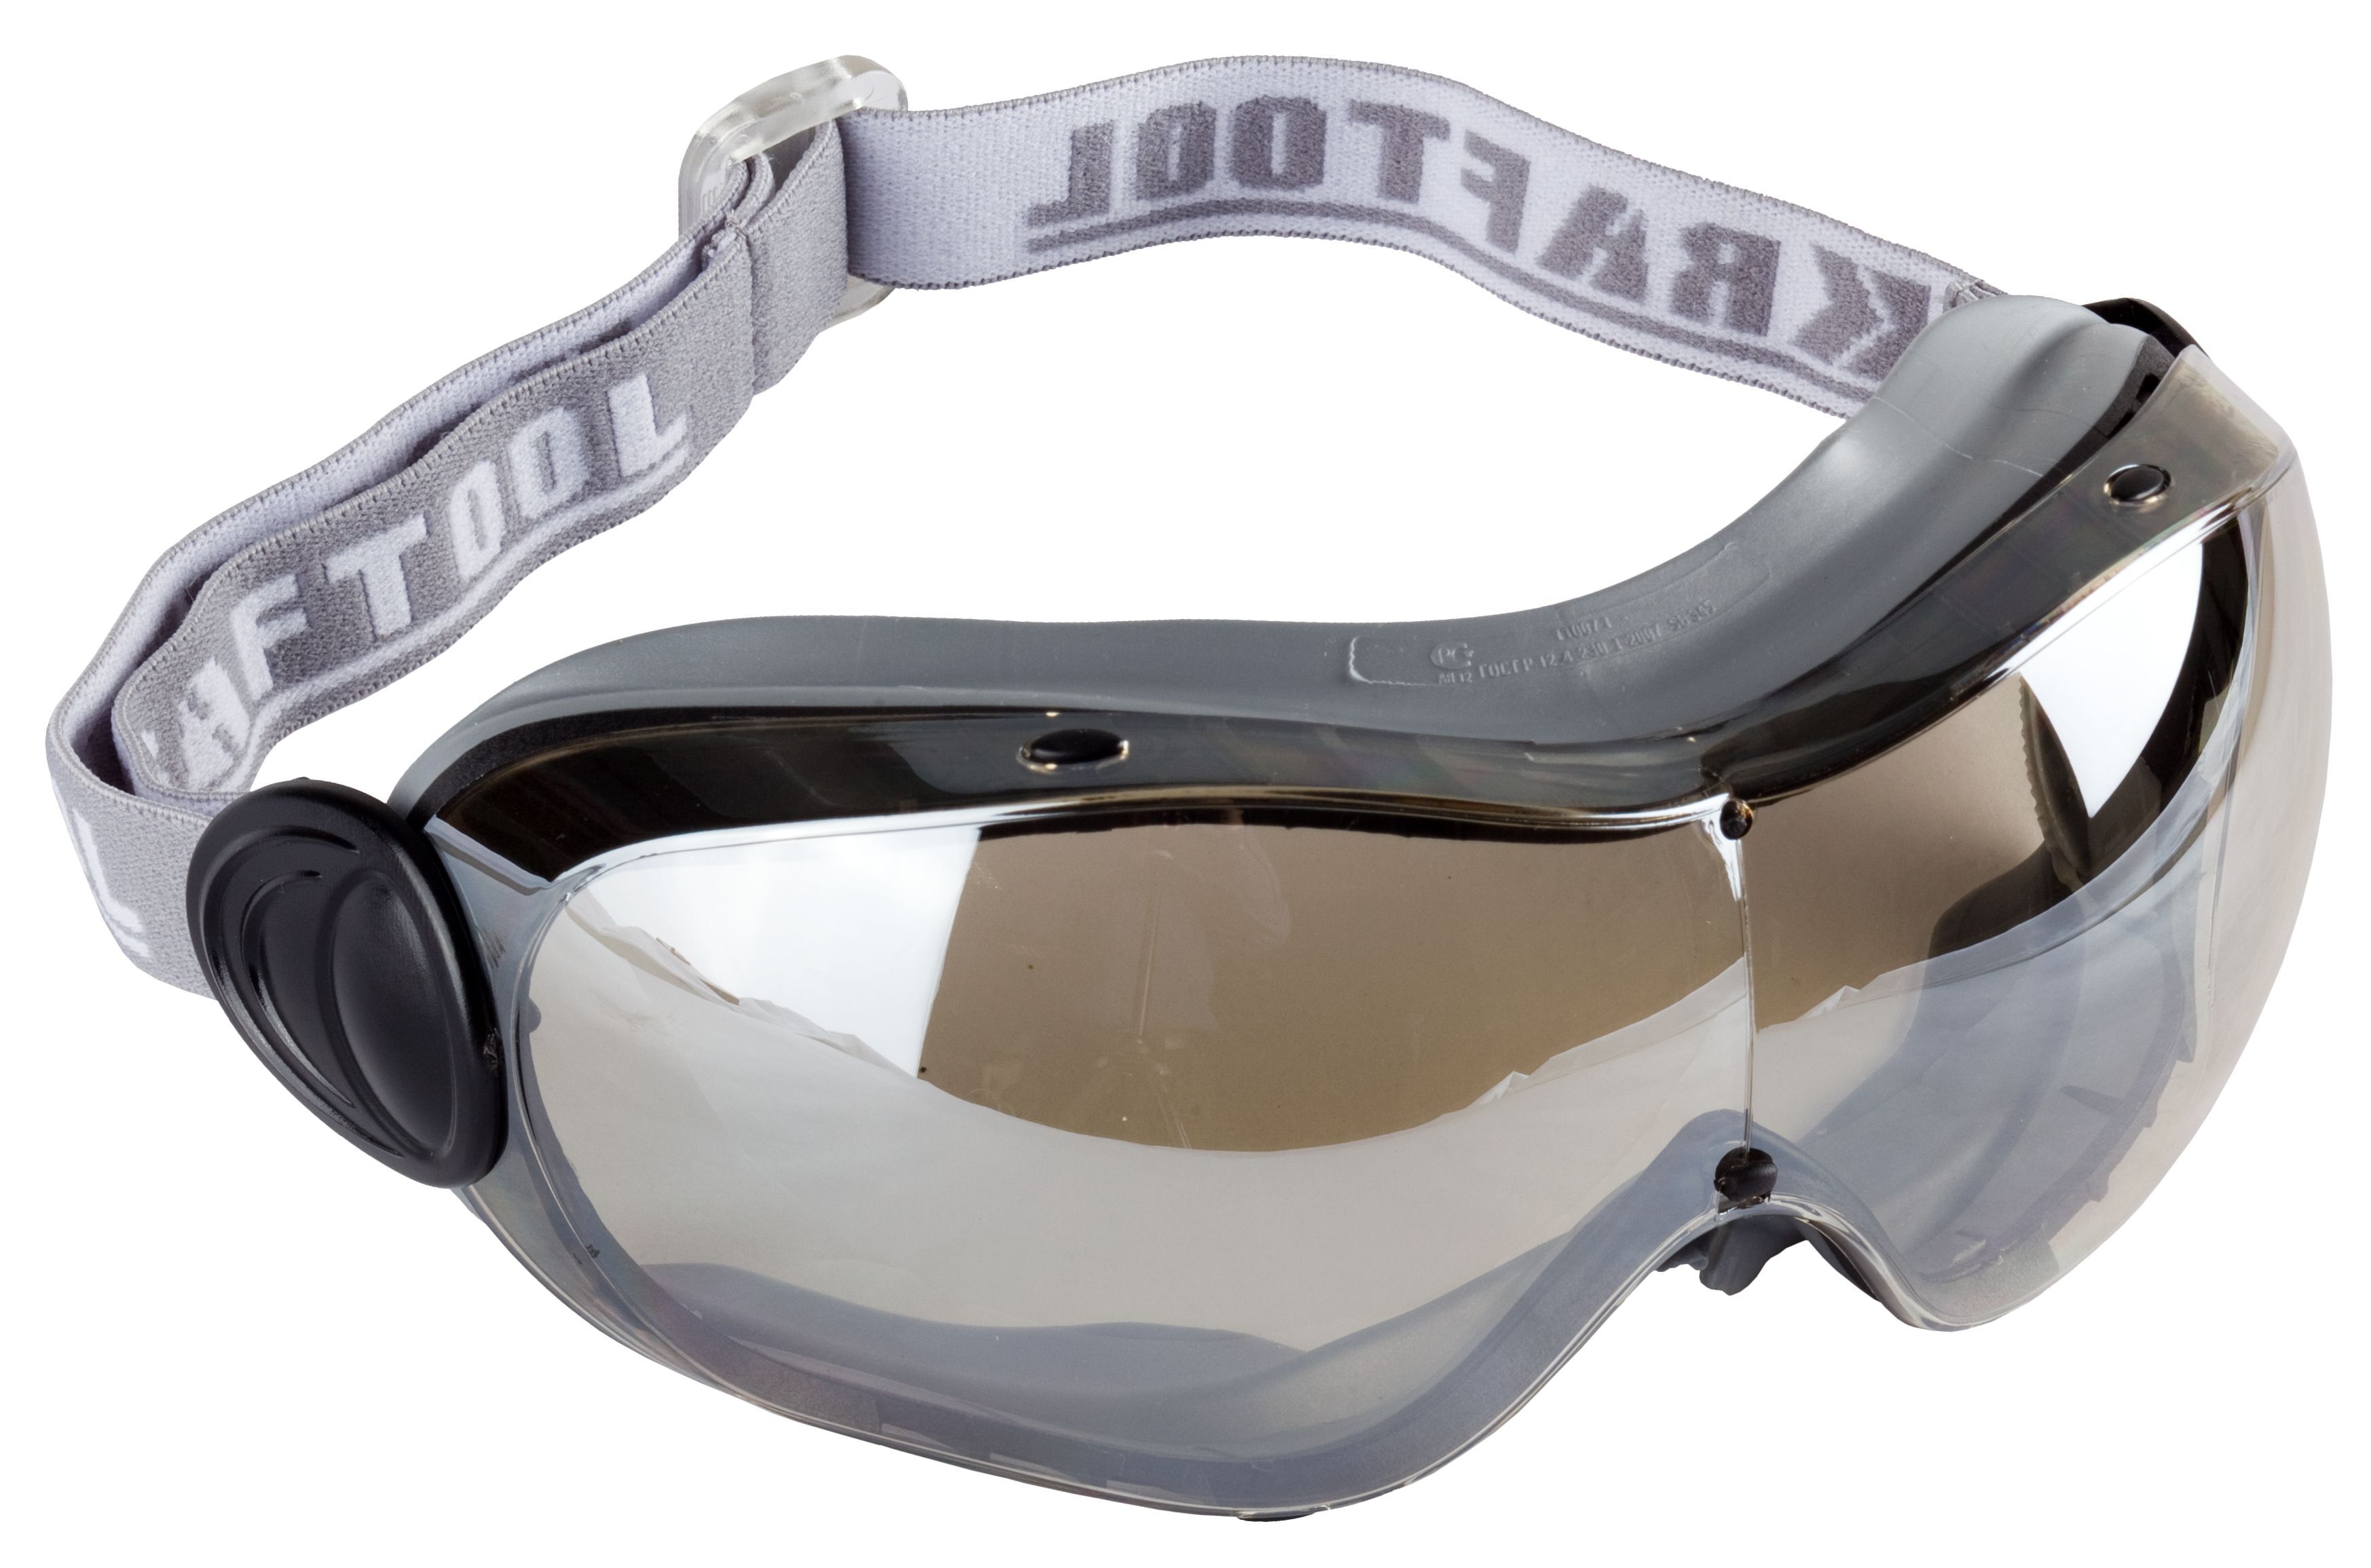 Химические защитные очки. 11007 Очки Kraftool защитные. Очки защитные Kraftool Expert 110305. Очки крафтул эксперт защитные 11007. Защитные очки Kraftool Expert.